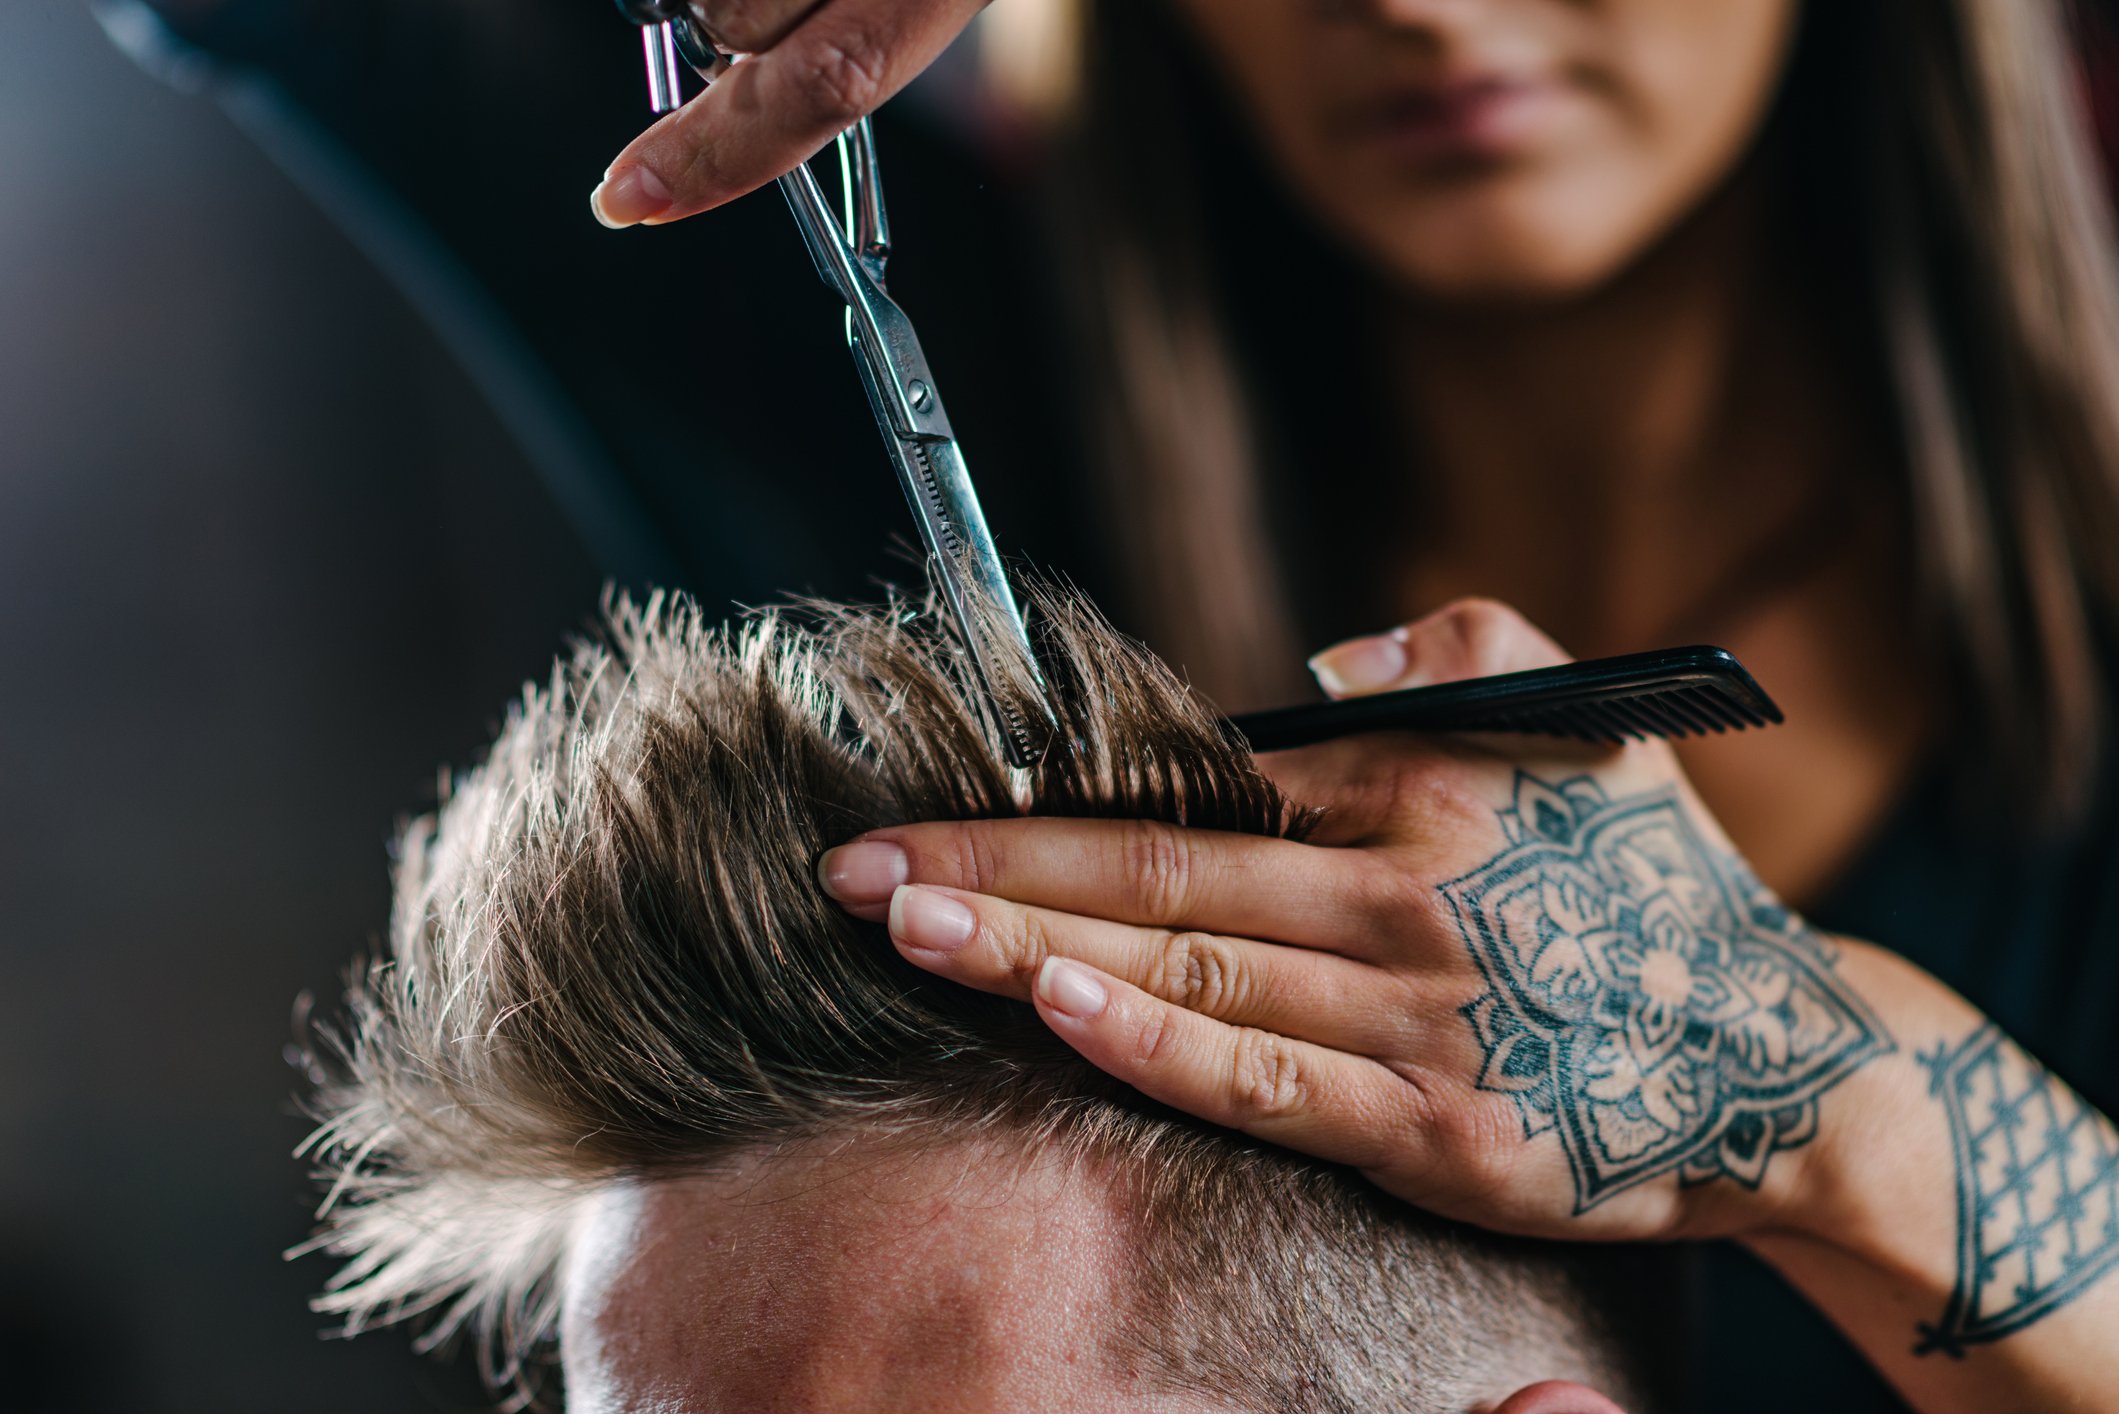 Friseur schneidet Haare im Salon I Quelle: Getty Images